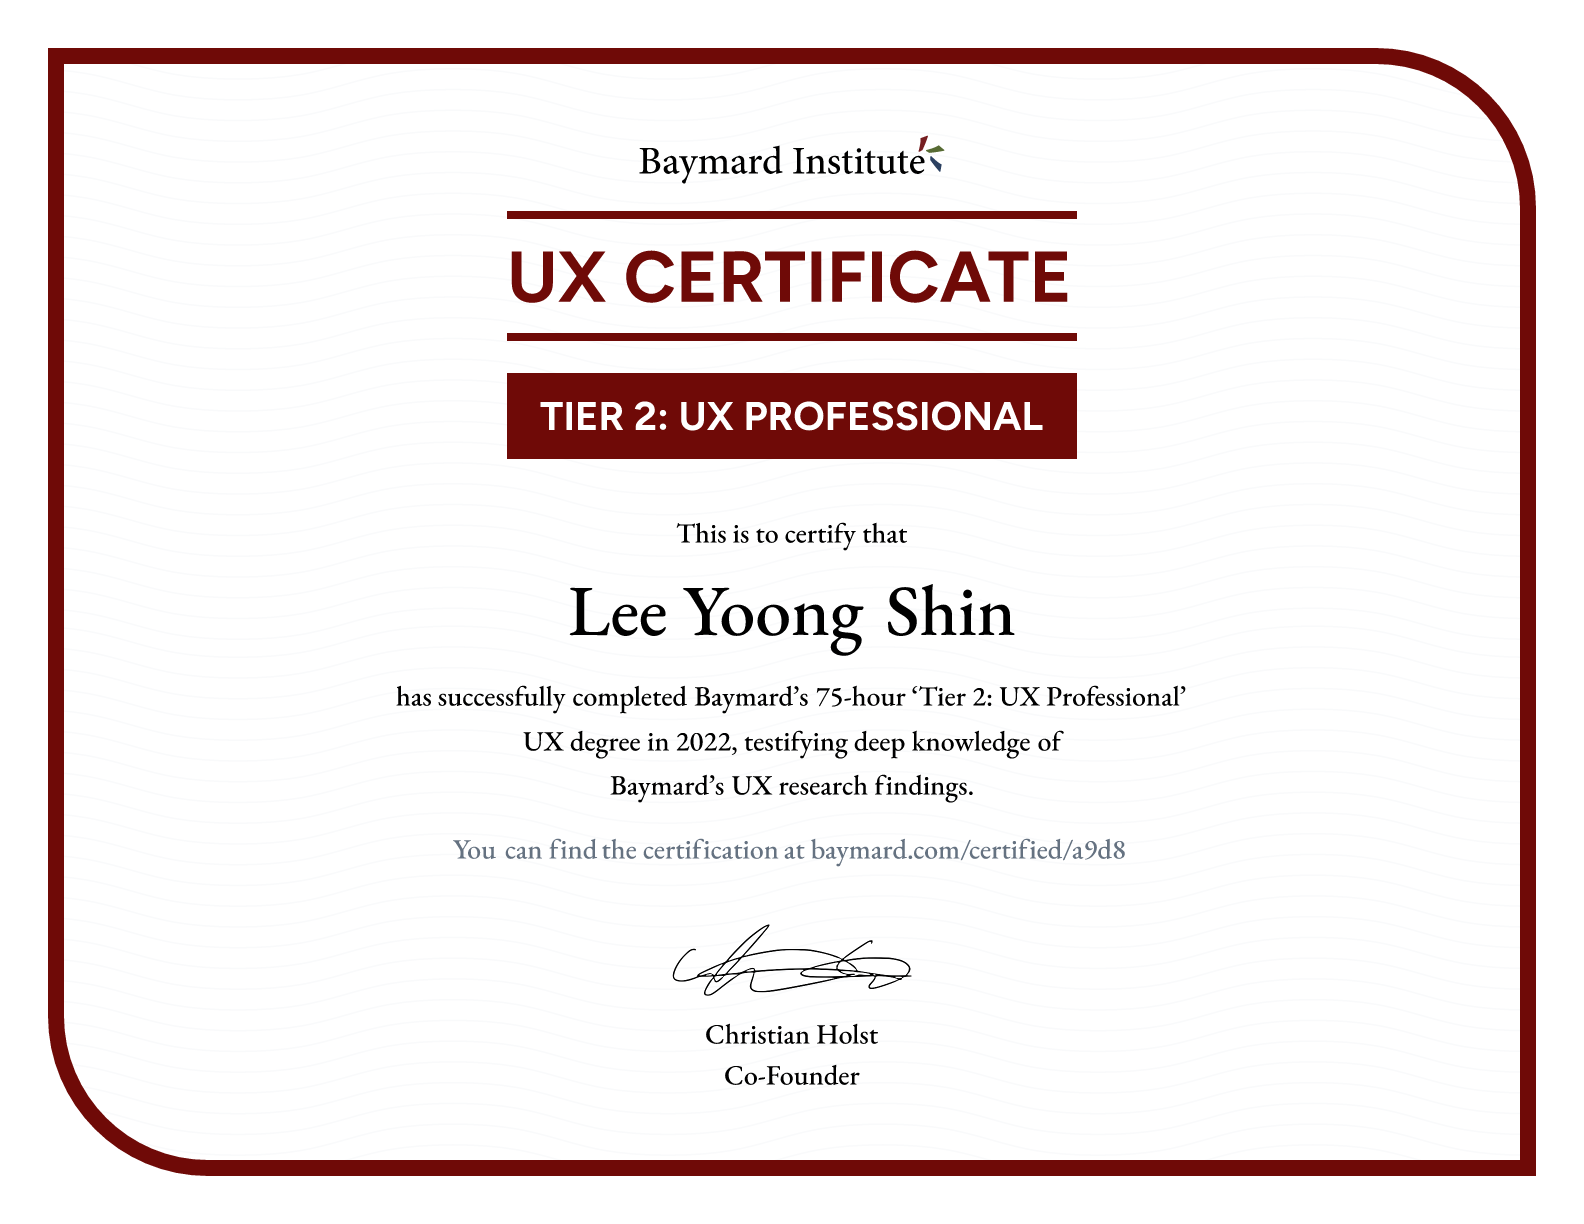 Lee Yoong Shin’s certificate